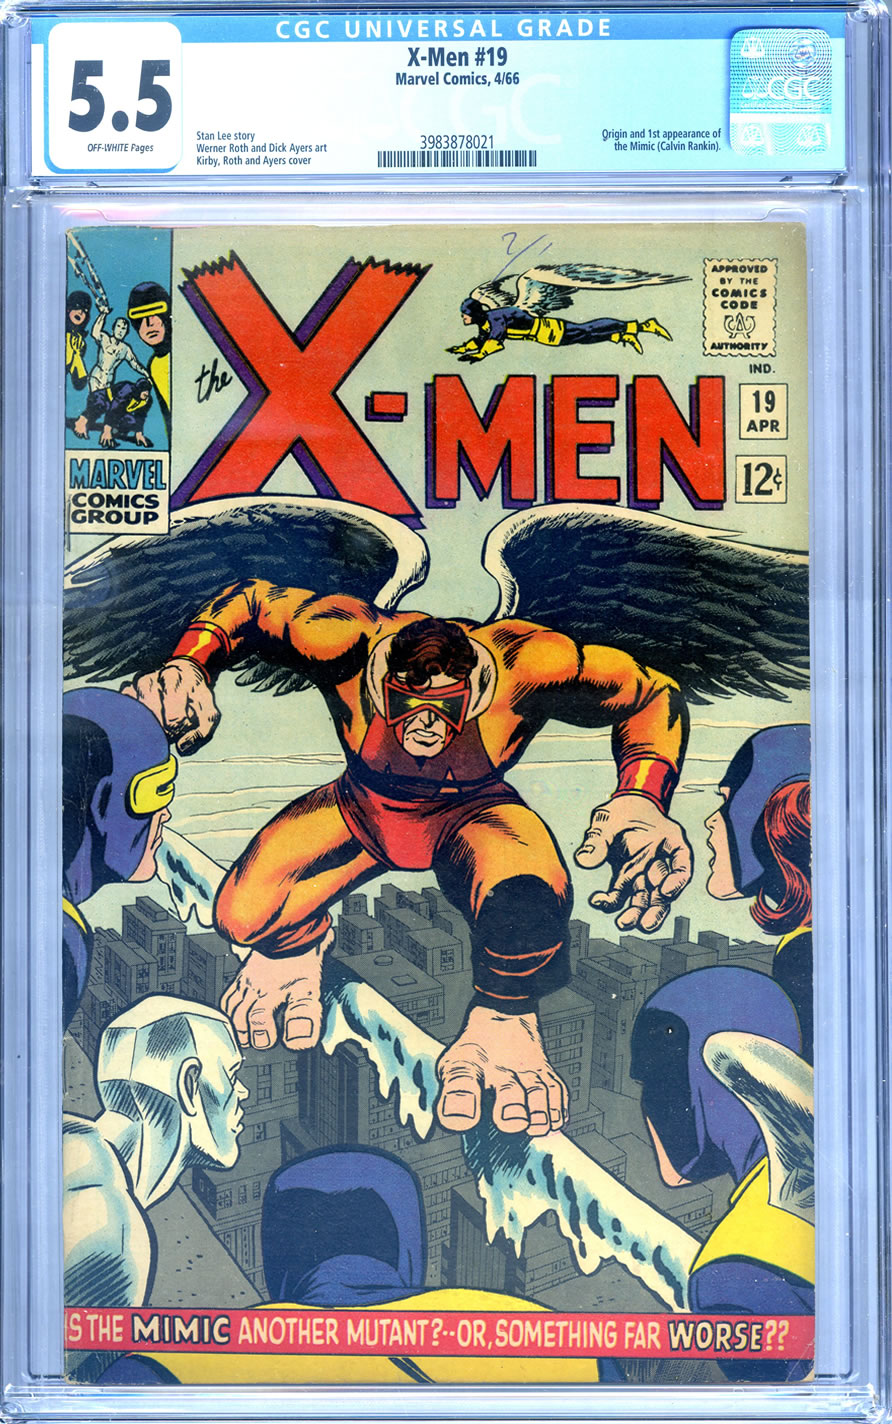 X-MEN Comics For Sale CHEAP at Crazy Eli's Discount Comics